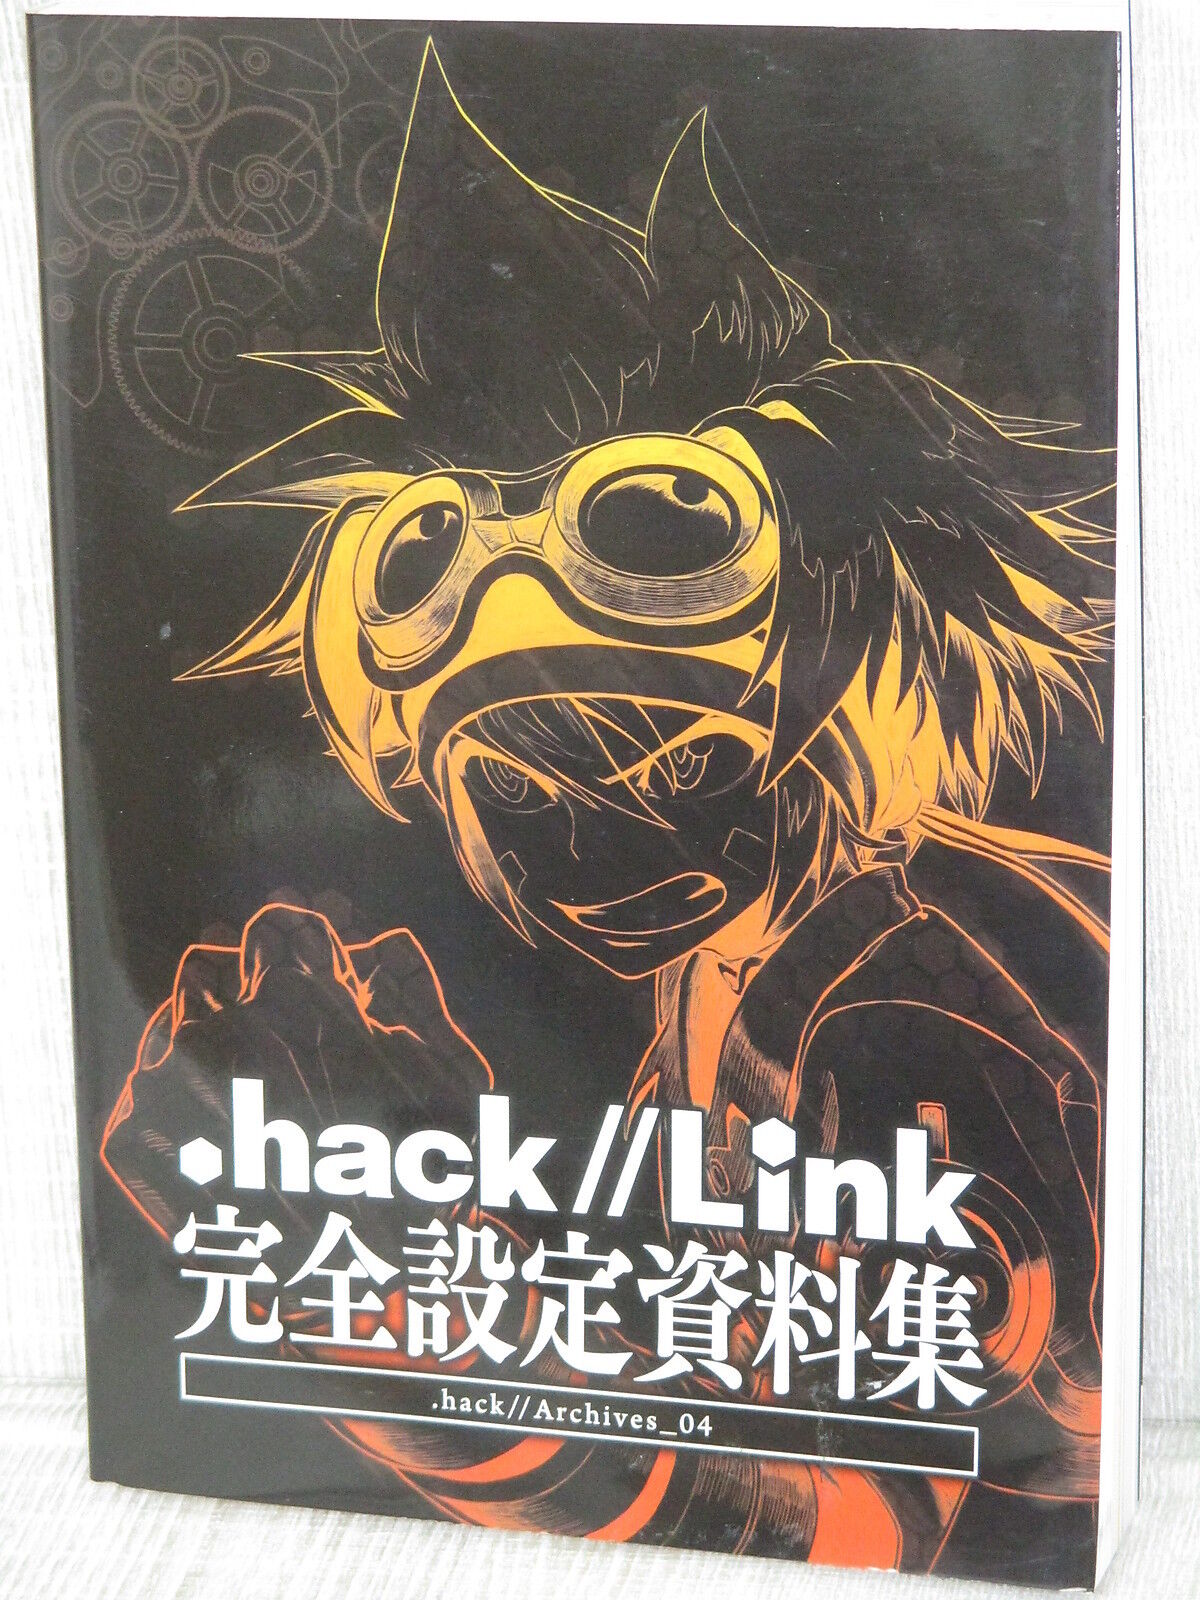 .HACK // LINK Archives 04 Art Works Design Fan Book 2014 Japan CC2